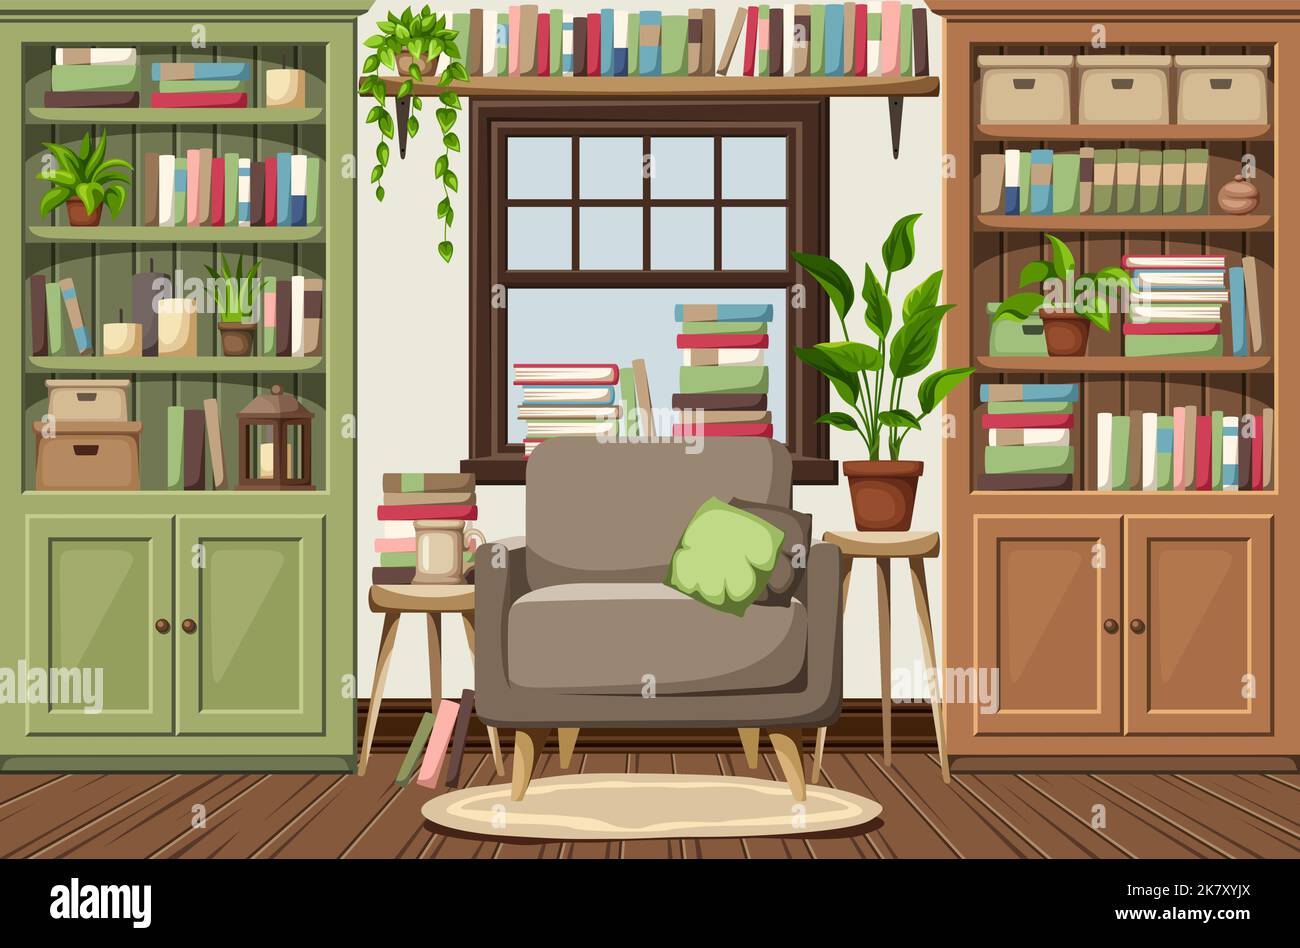 Interni della camera con librerie verdi e marroni, una poltrona e molti libri e piante da casa. Intimo design classico vecchio stile. Cartone animato ve Illustrazione Vettoriale